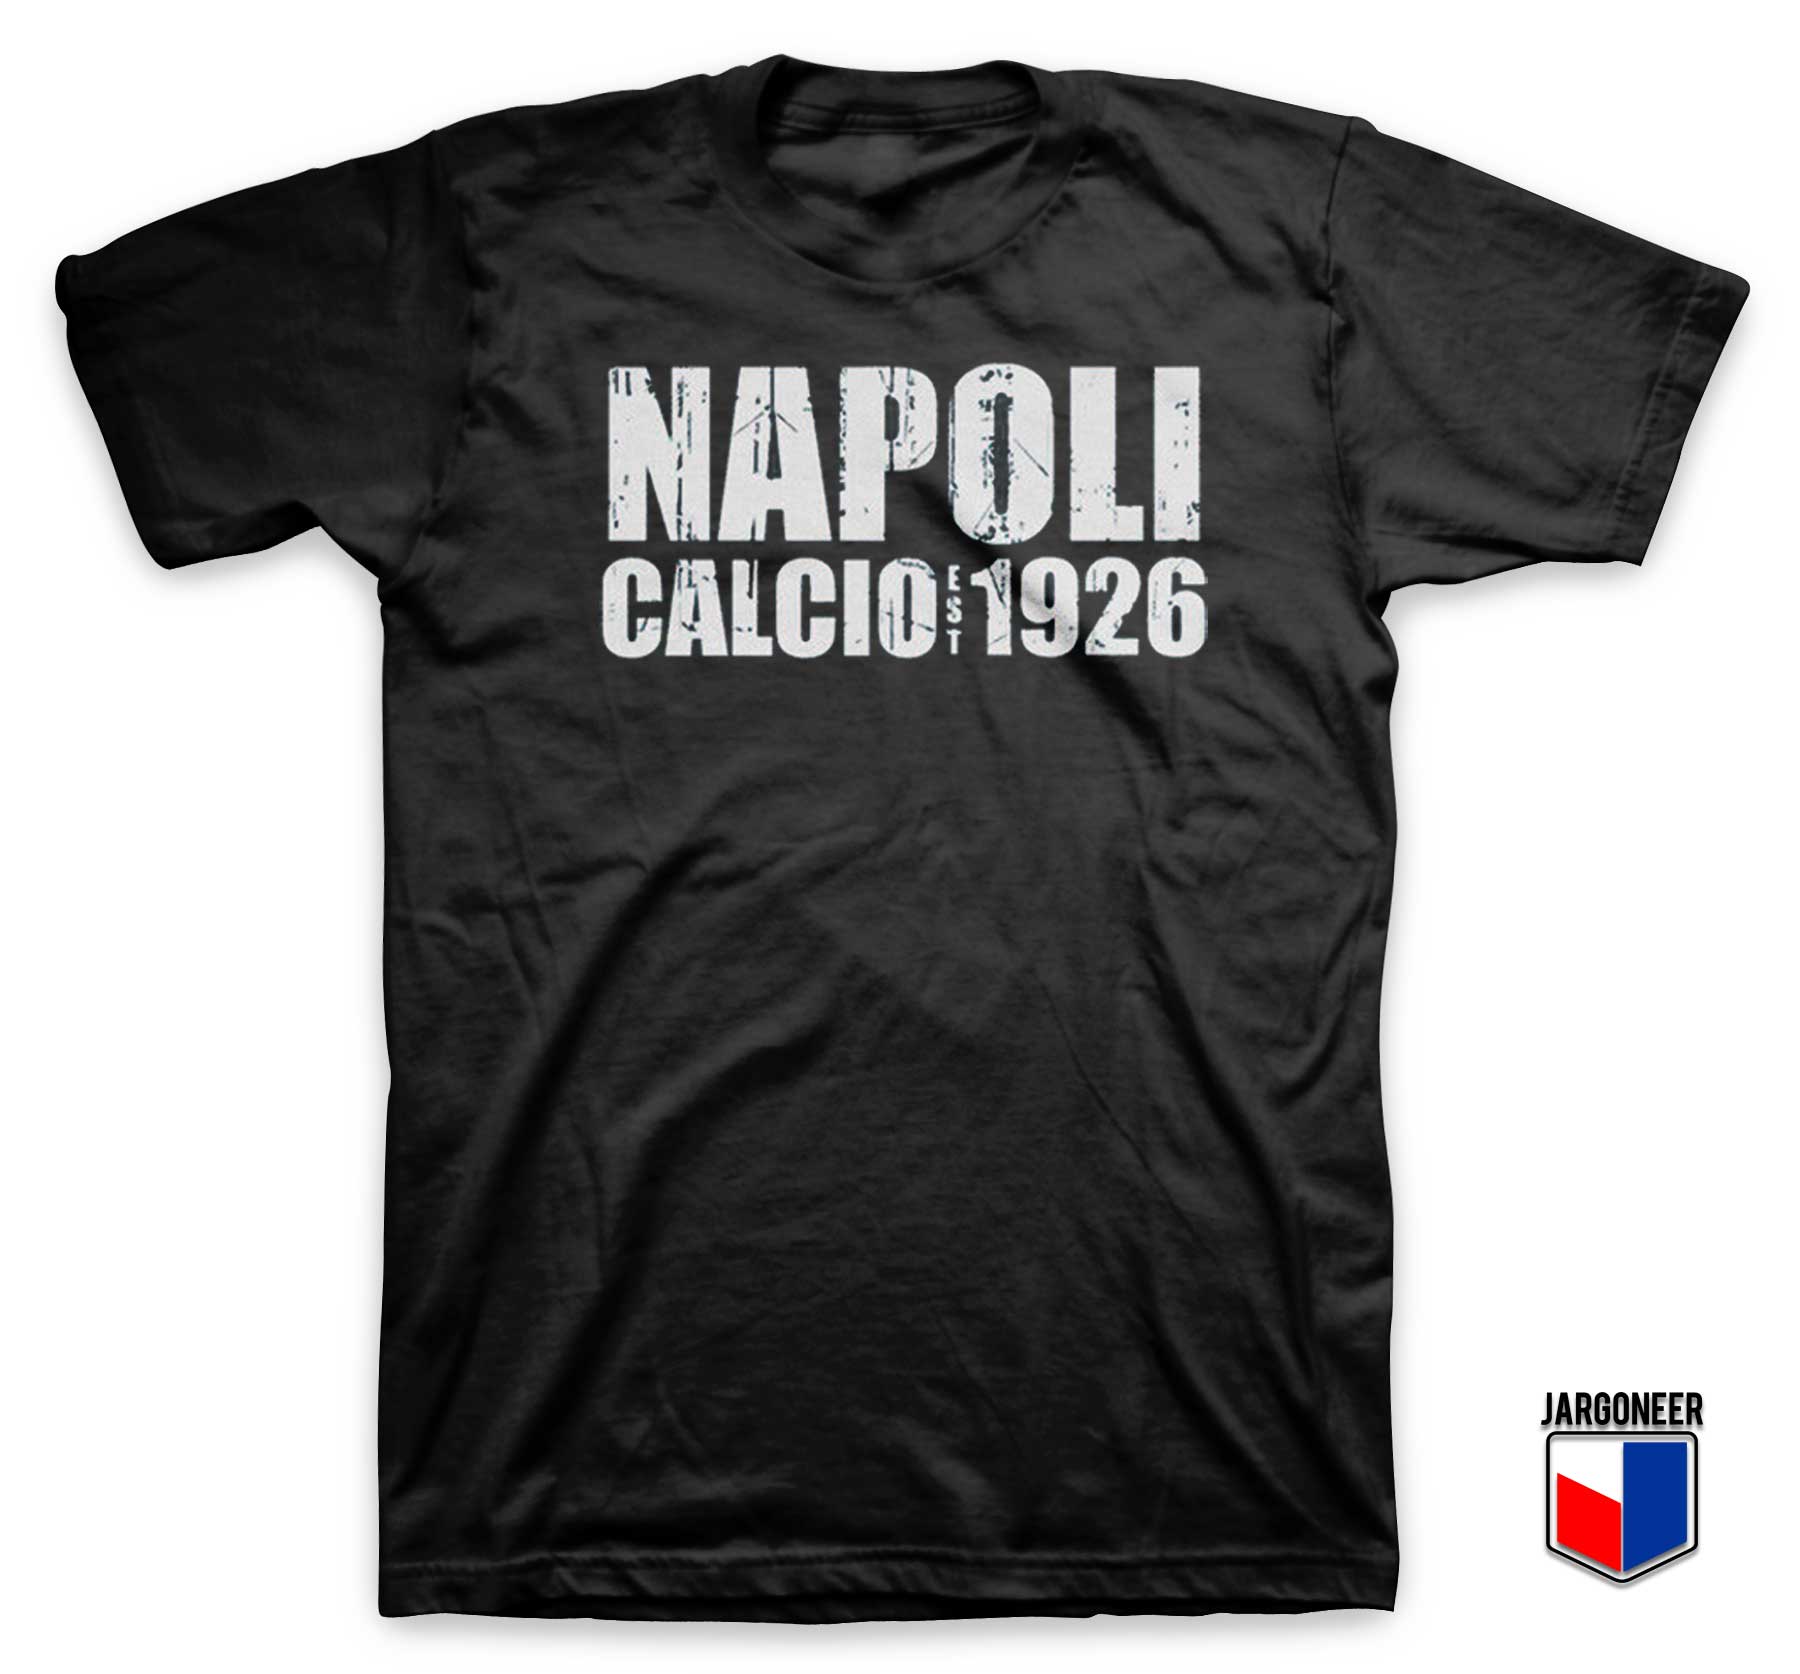 Napoli Calcio Est 1926 T Shirt - Shop Unique Graphic Cool Shirt Designs